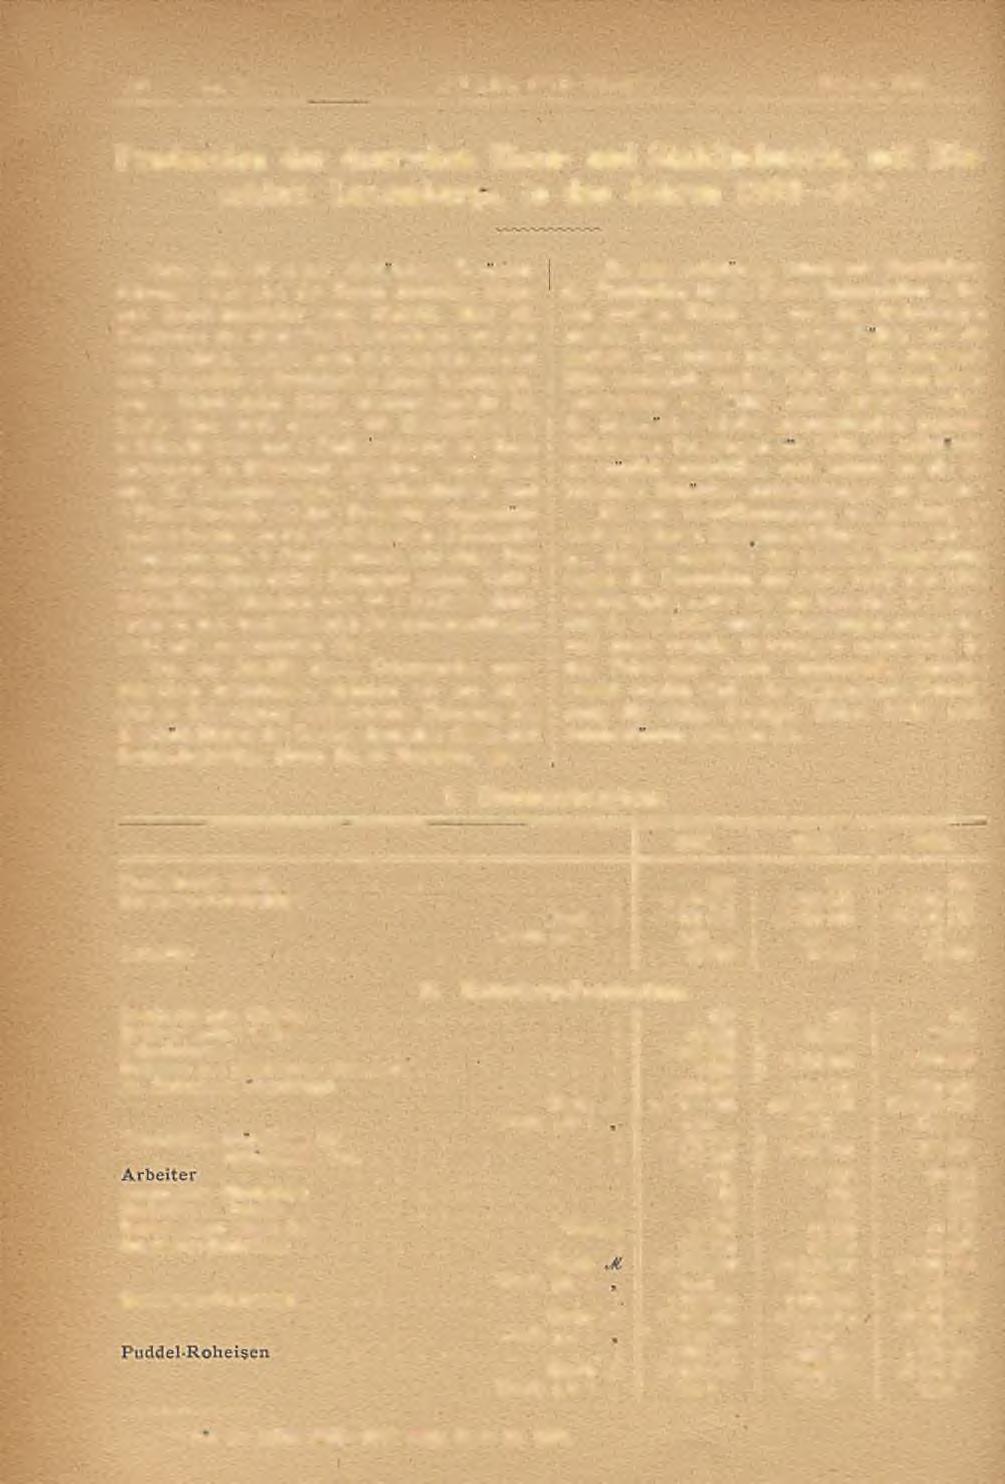 110 Nr. 2. STAHL UND EISEN." Februar 1886. Production der deutschen Eisen- und Stahlindustrie, mit Einschlufs Luxeinburgs, in den Jahren 1882 84.* Unter Nr.